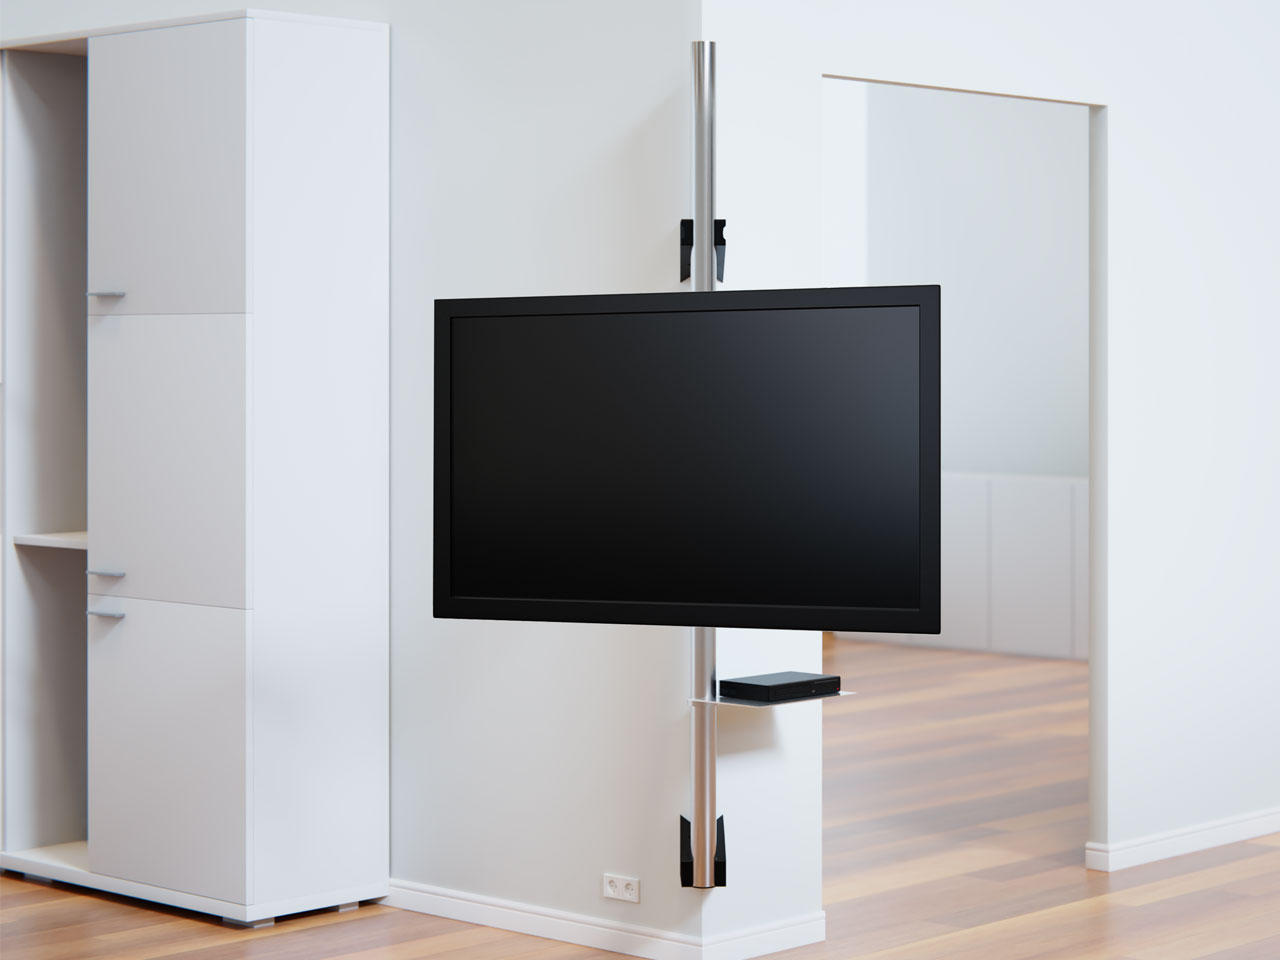 Elektrisch schwenkbare TV Wandhalterung bis 75 Zoll günstig kaufen